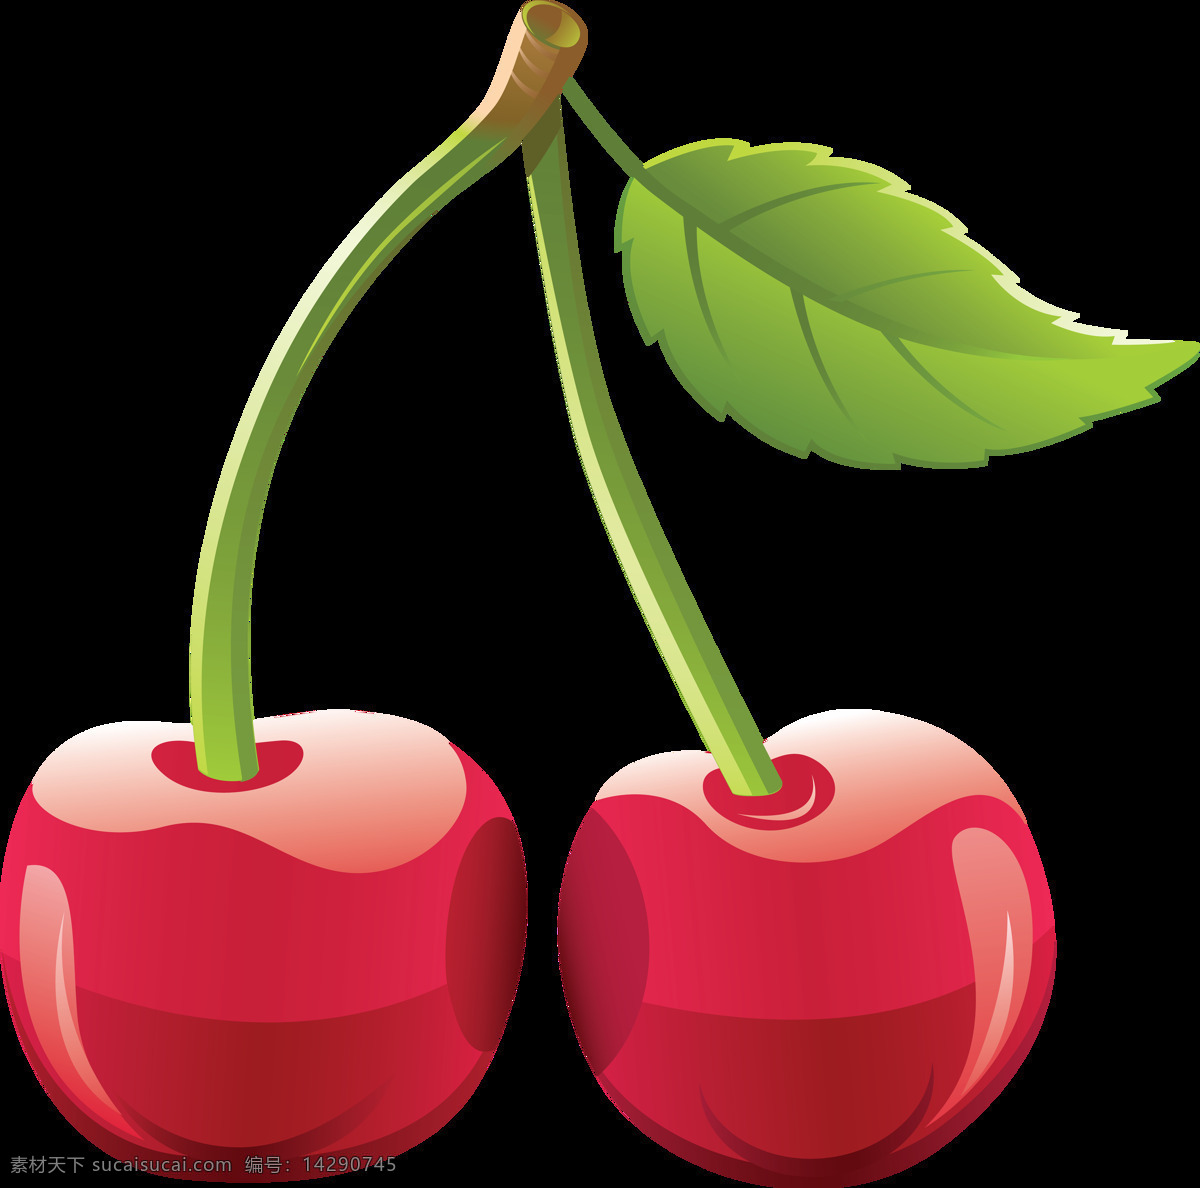 水果 鲜果 生鲜水果 健康 绿色 车厘子 大樱桃 有机水果 绿色水果 生物世界 水果素材 生活用品 生活百科